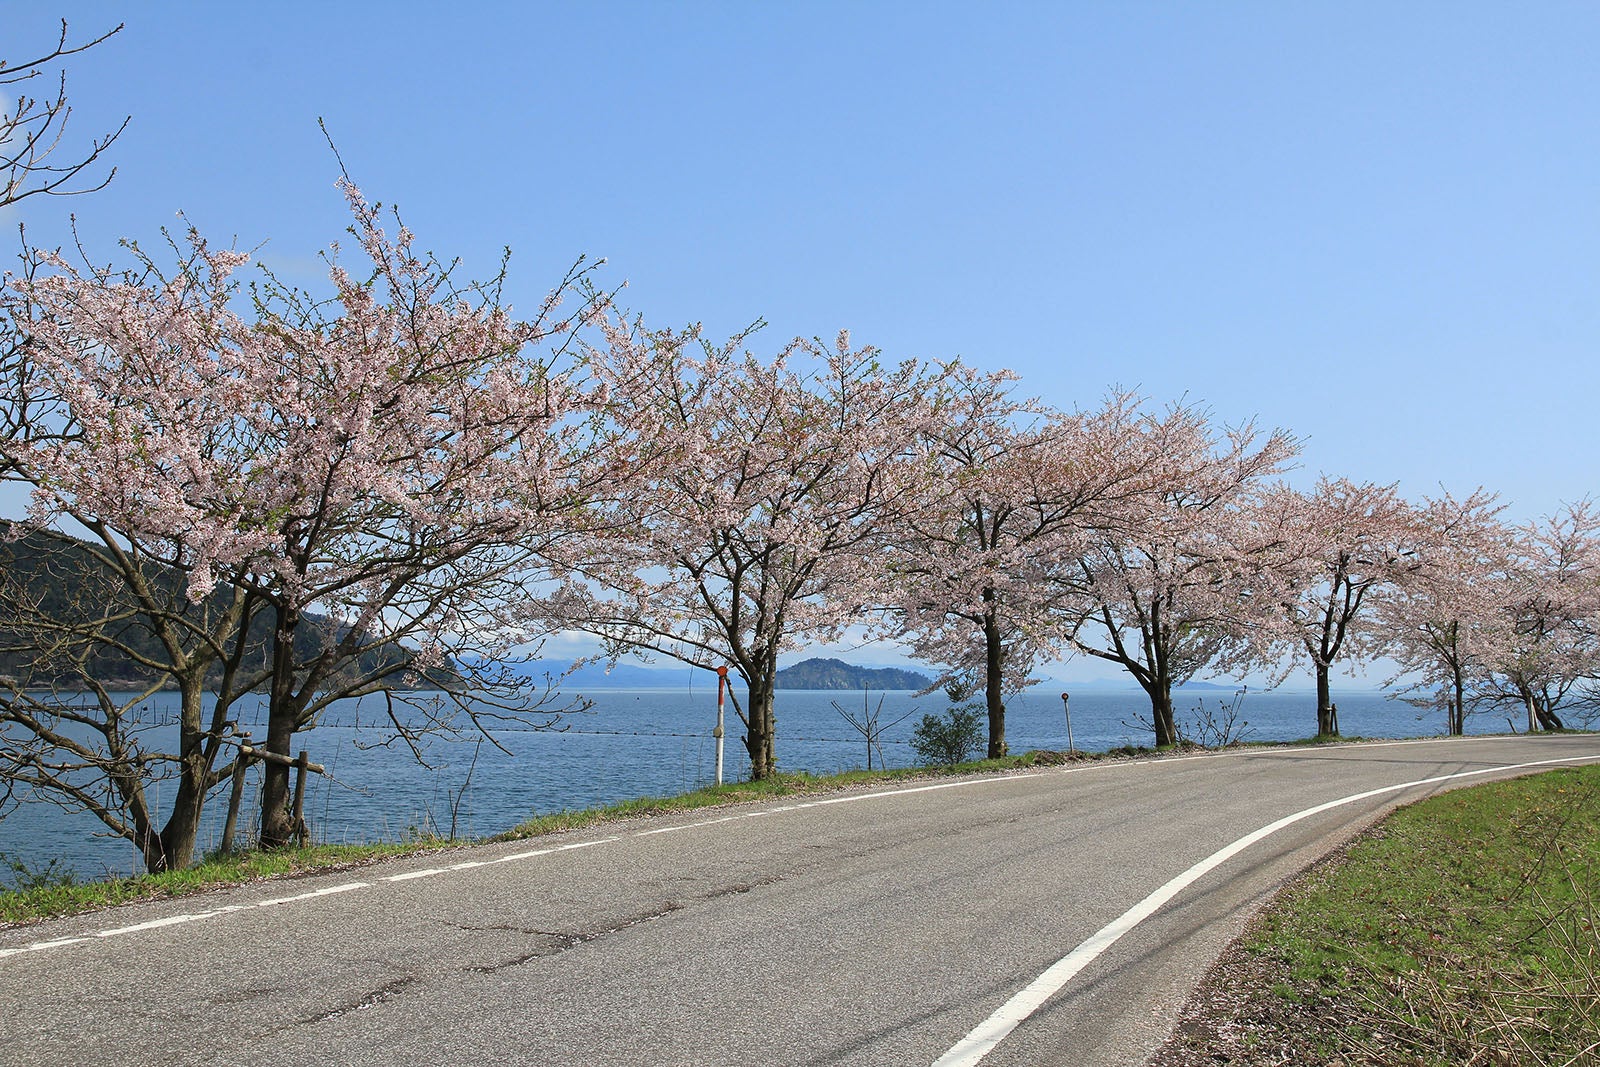 写真3 どこまでも続く桜並木。青空と湖面のブルー、桜の花のピンクが春らしいコントラストを描く（撮影エリアは地図３を参照）